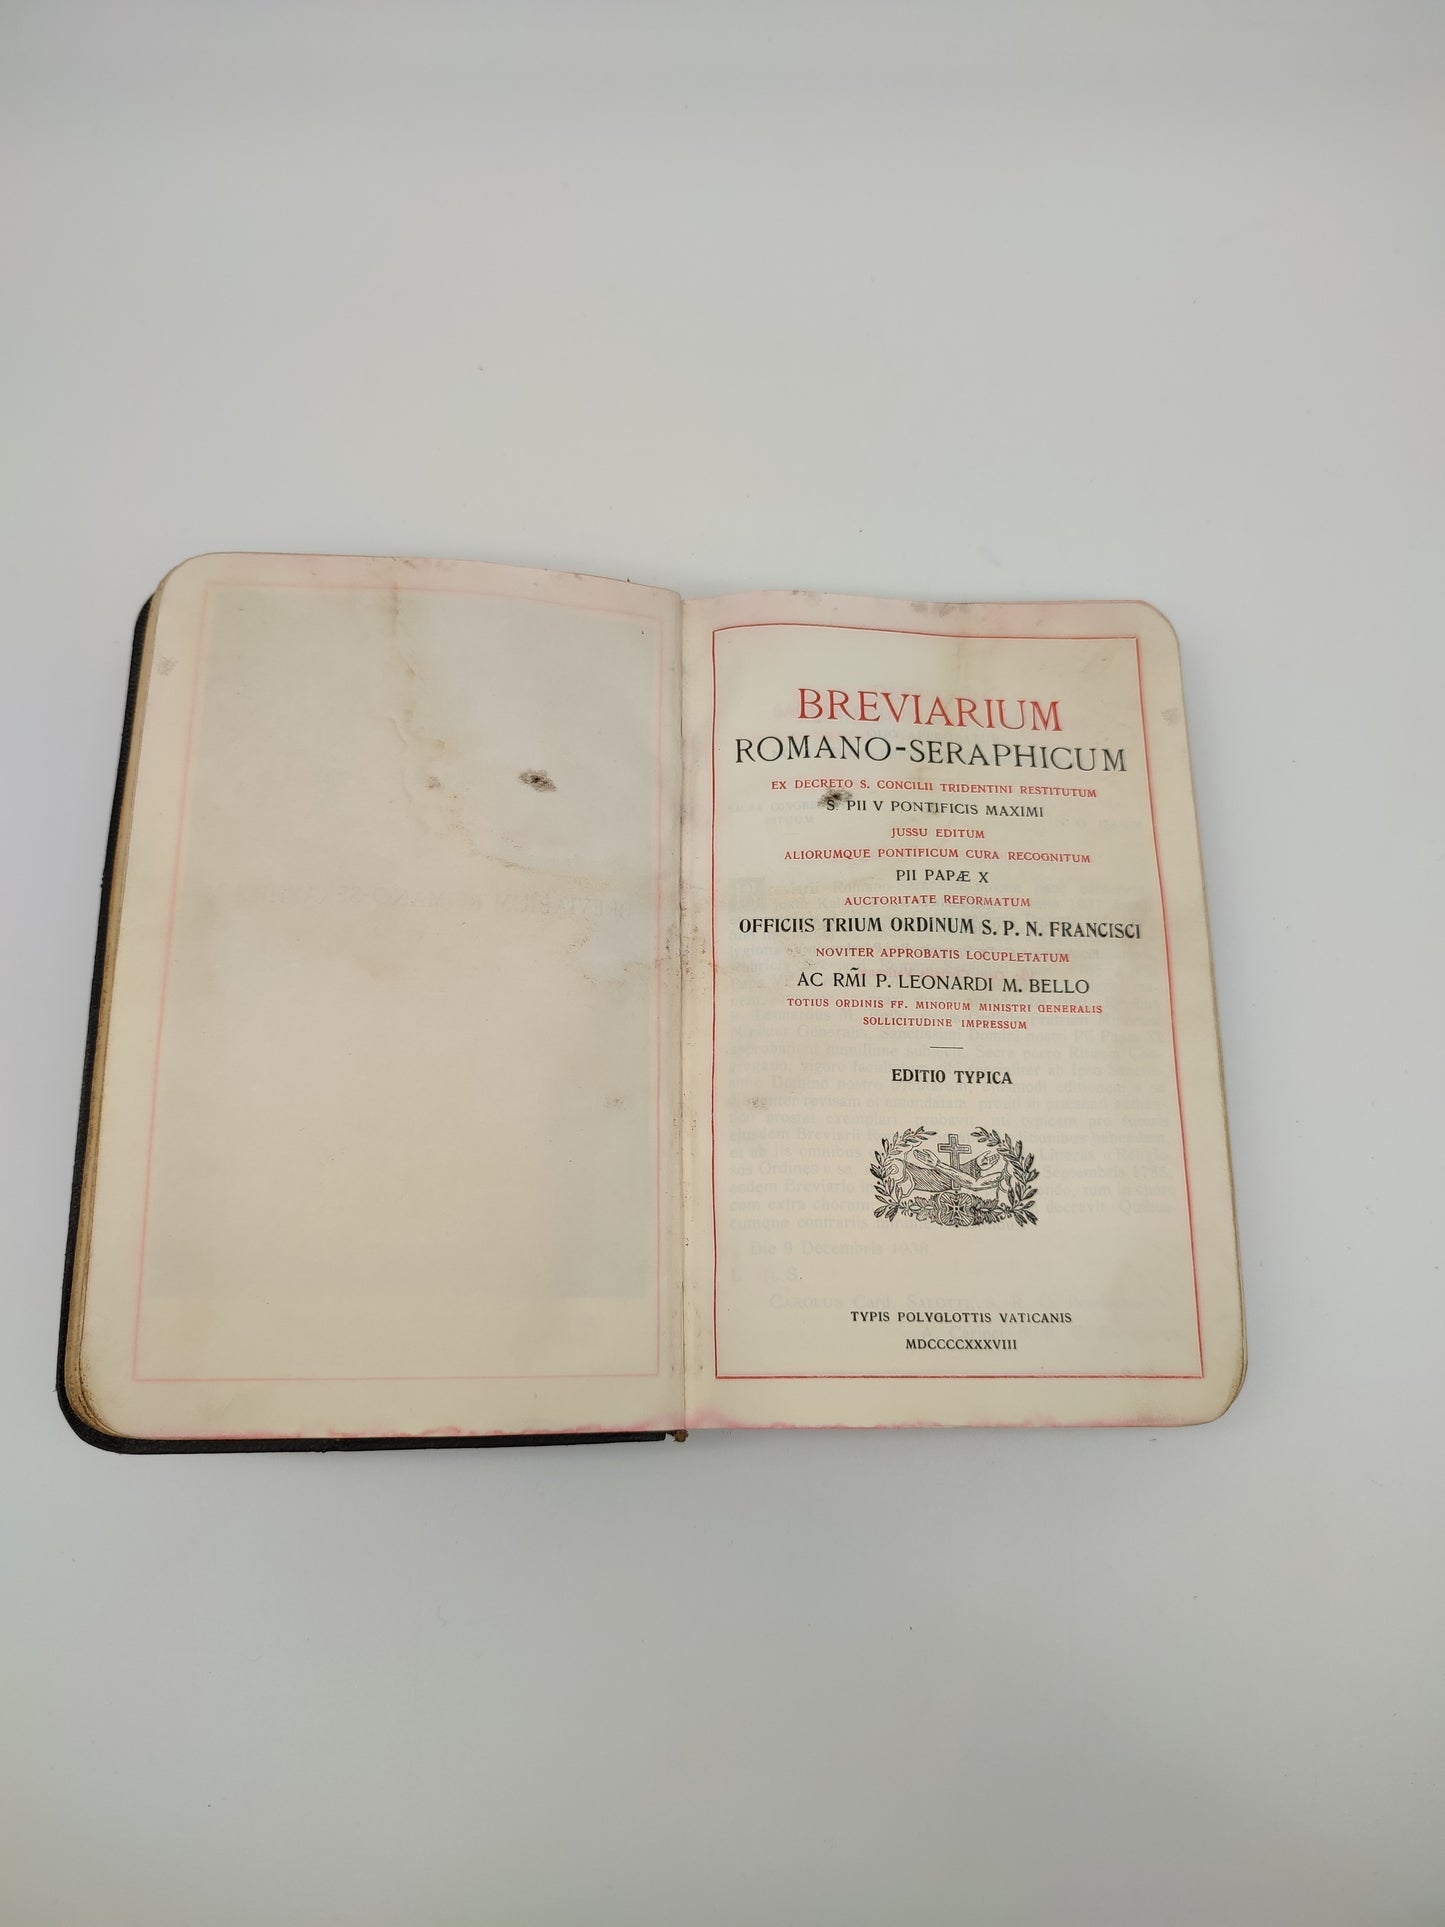 69796 Breviarium romano-seraphicum, editio Typica, 1938